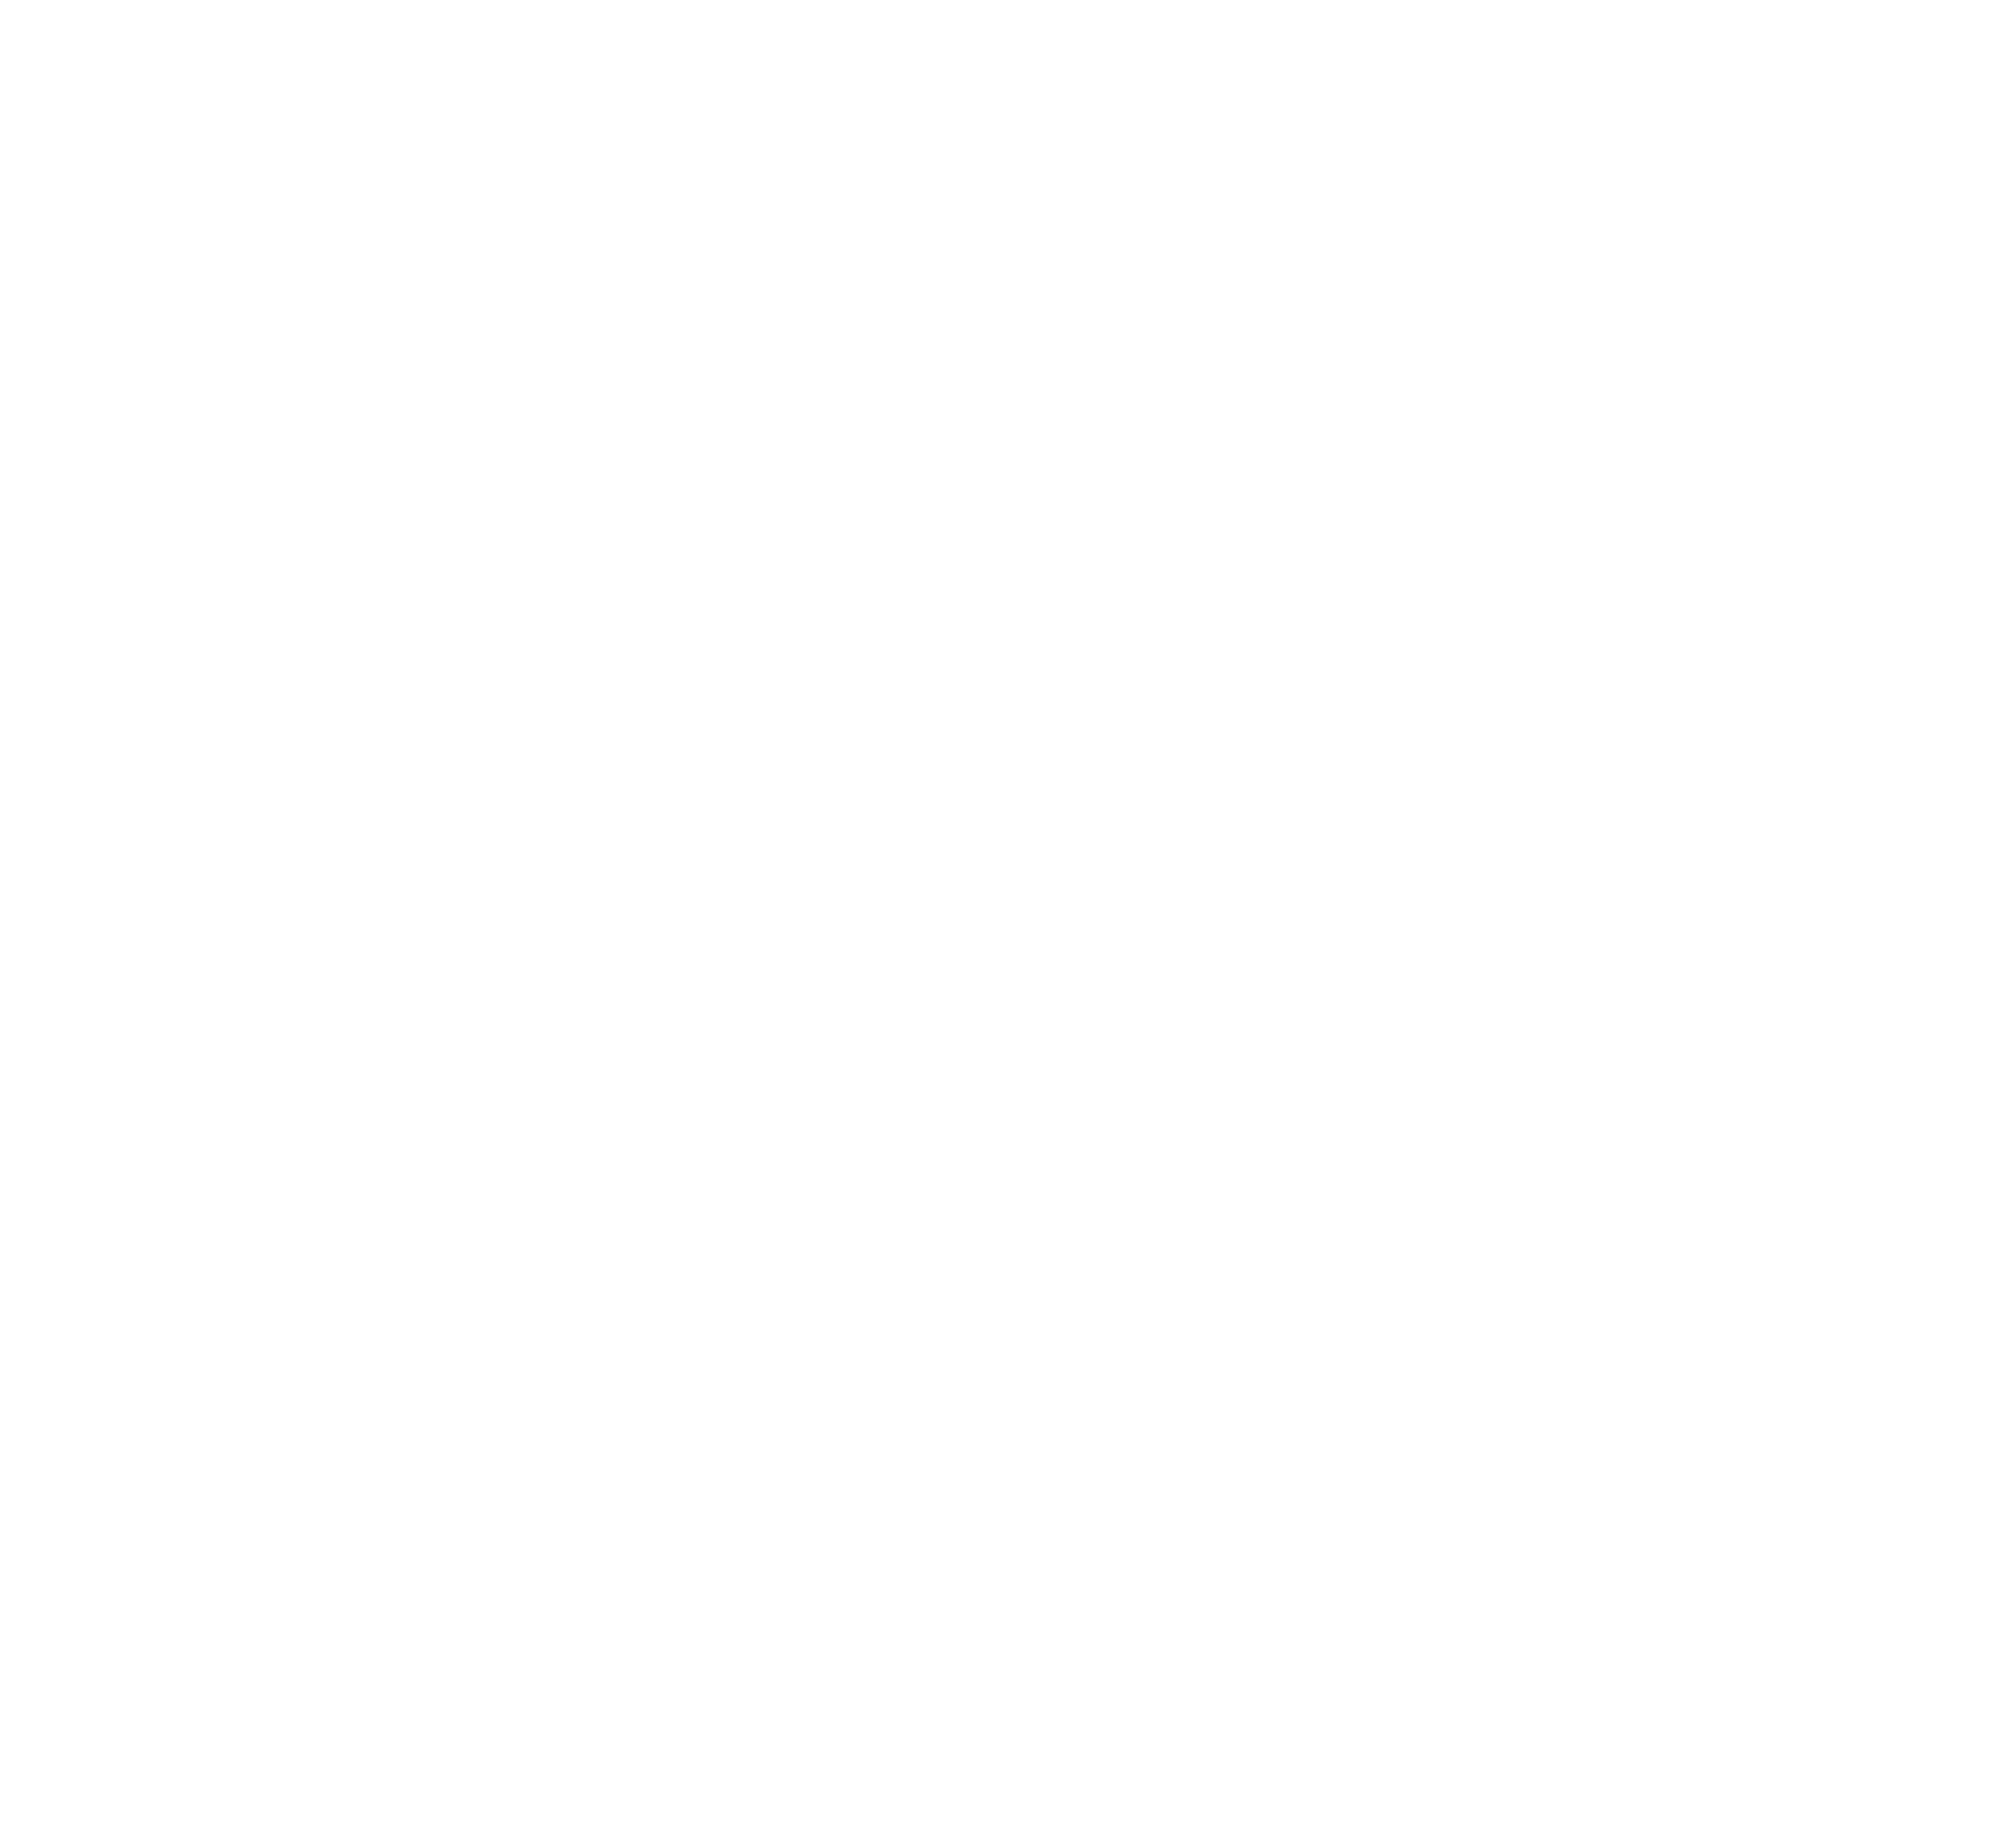 PGI Contracts